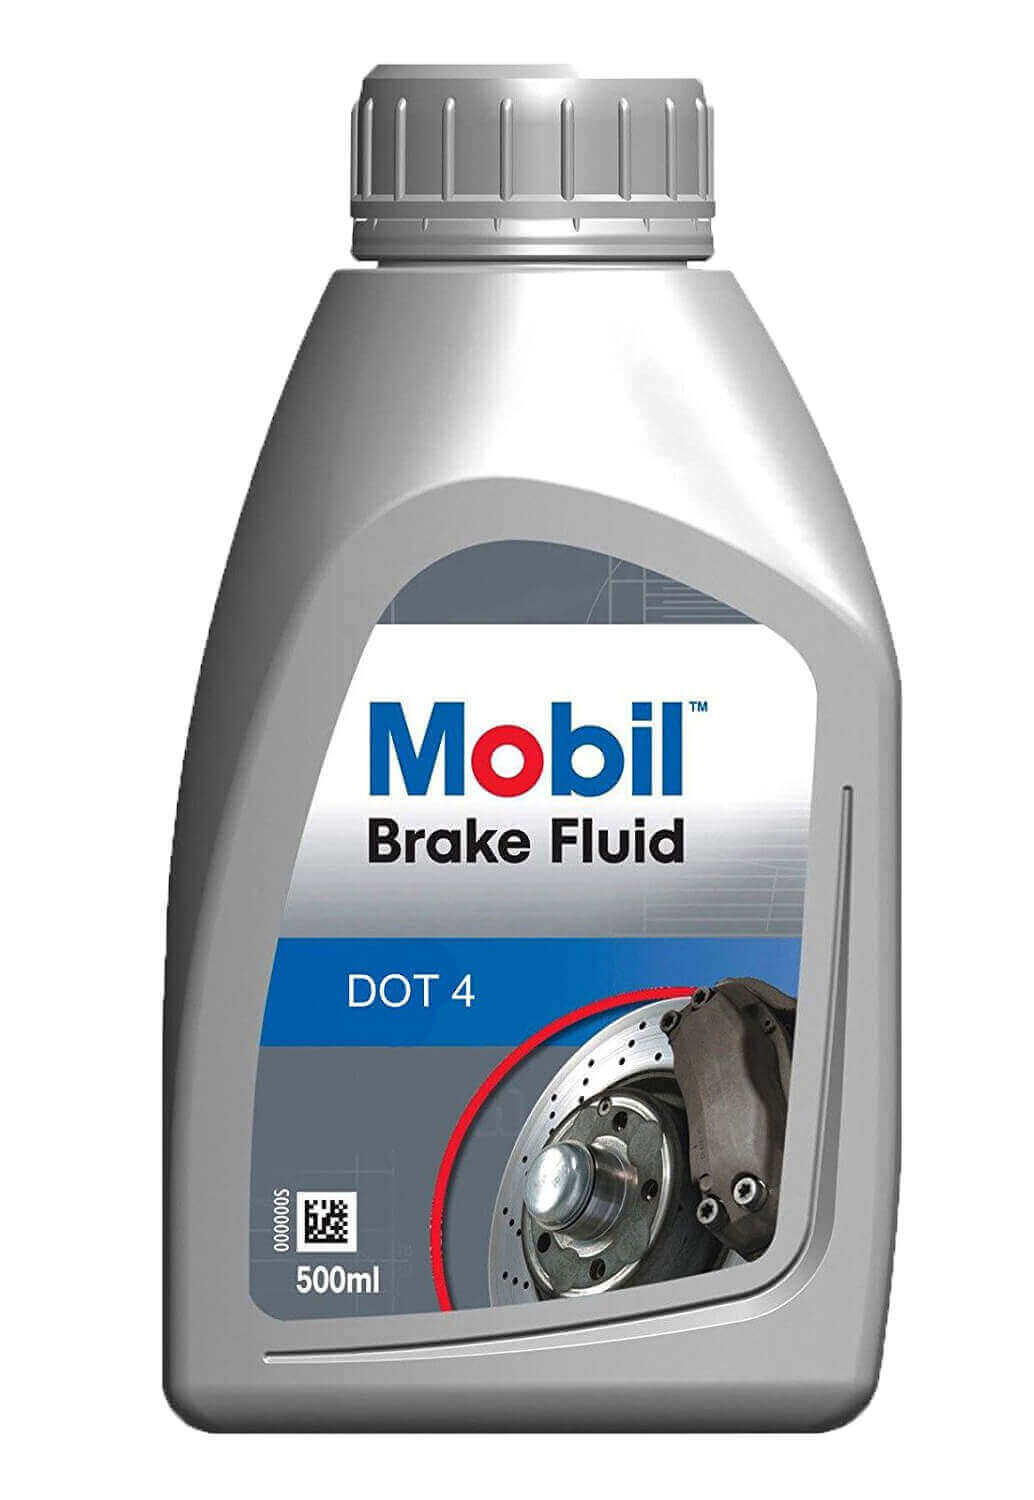 Mobil Brake Fluid DOT 4 ESP